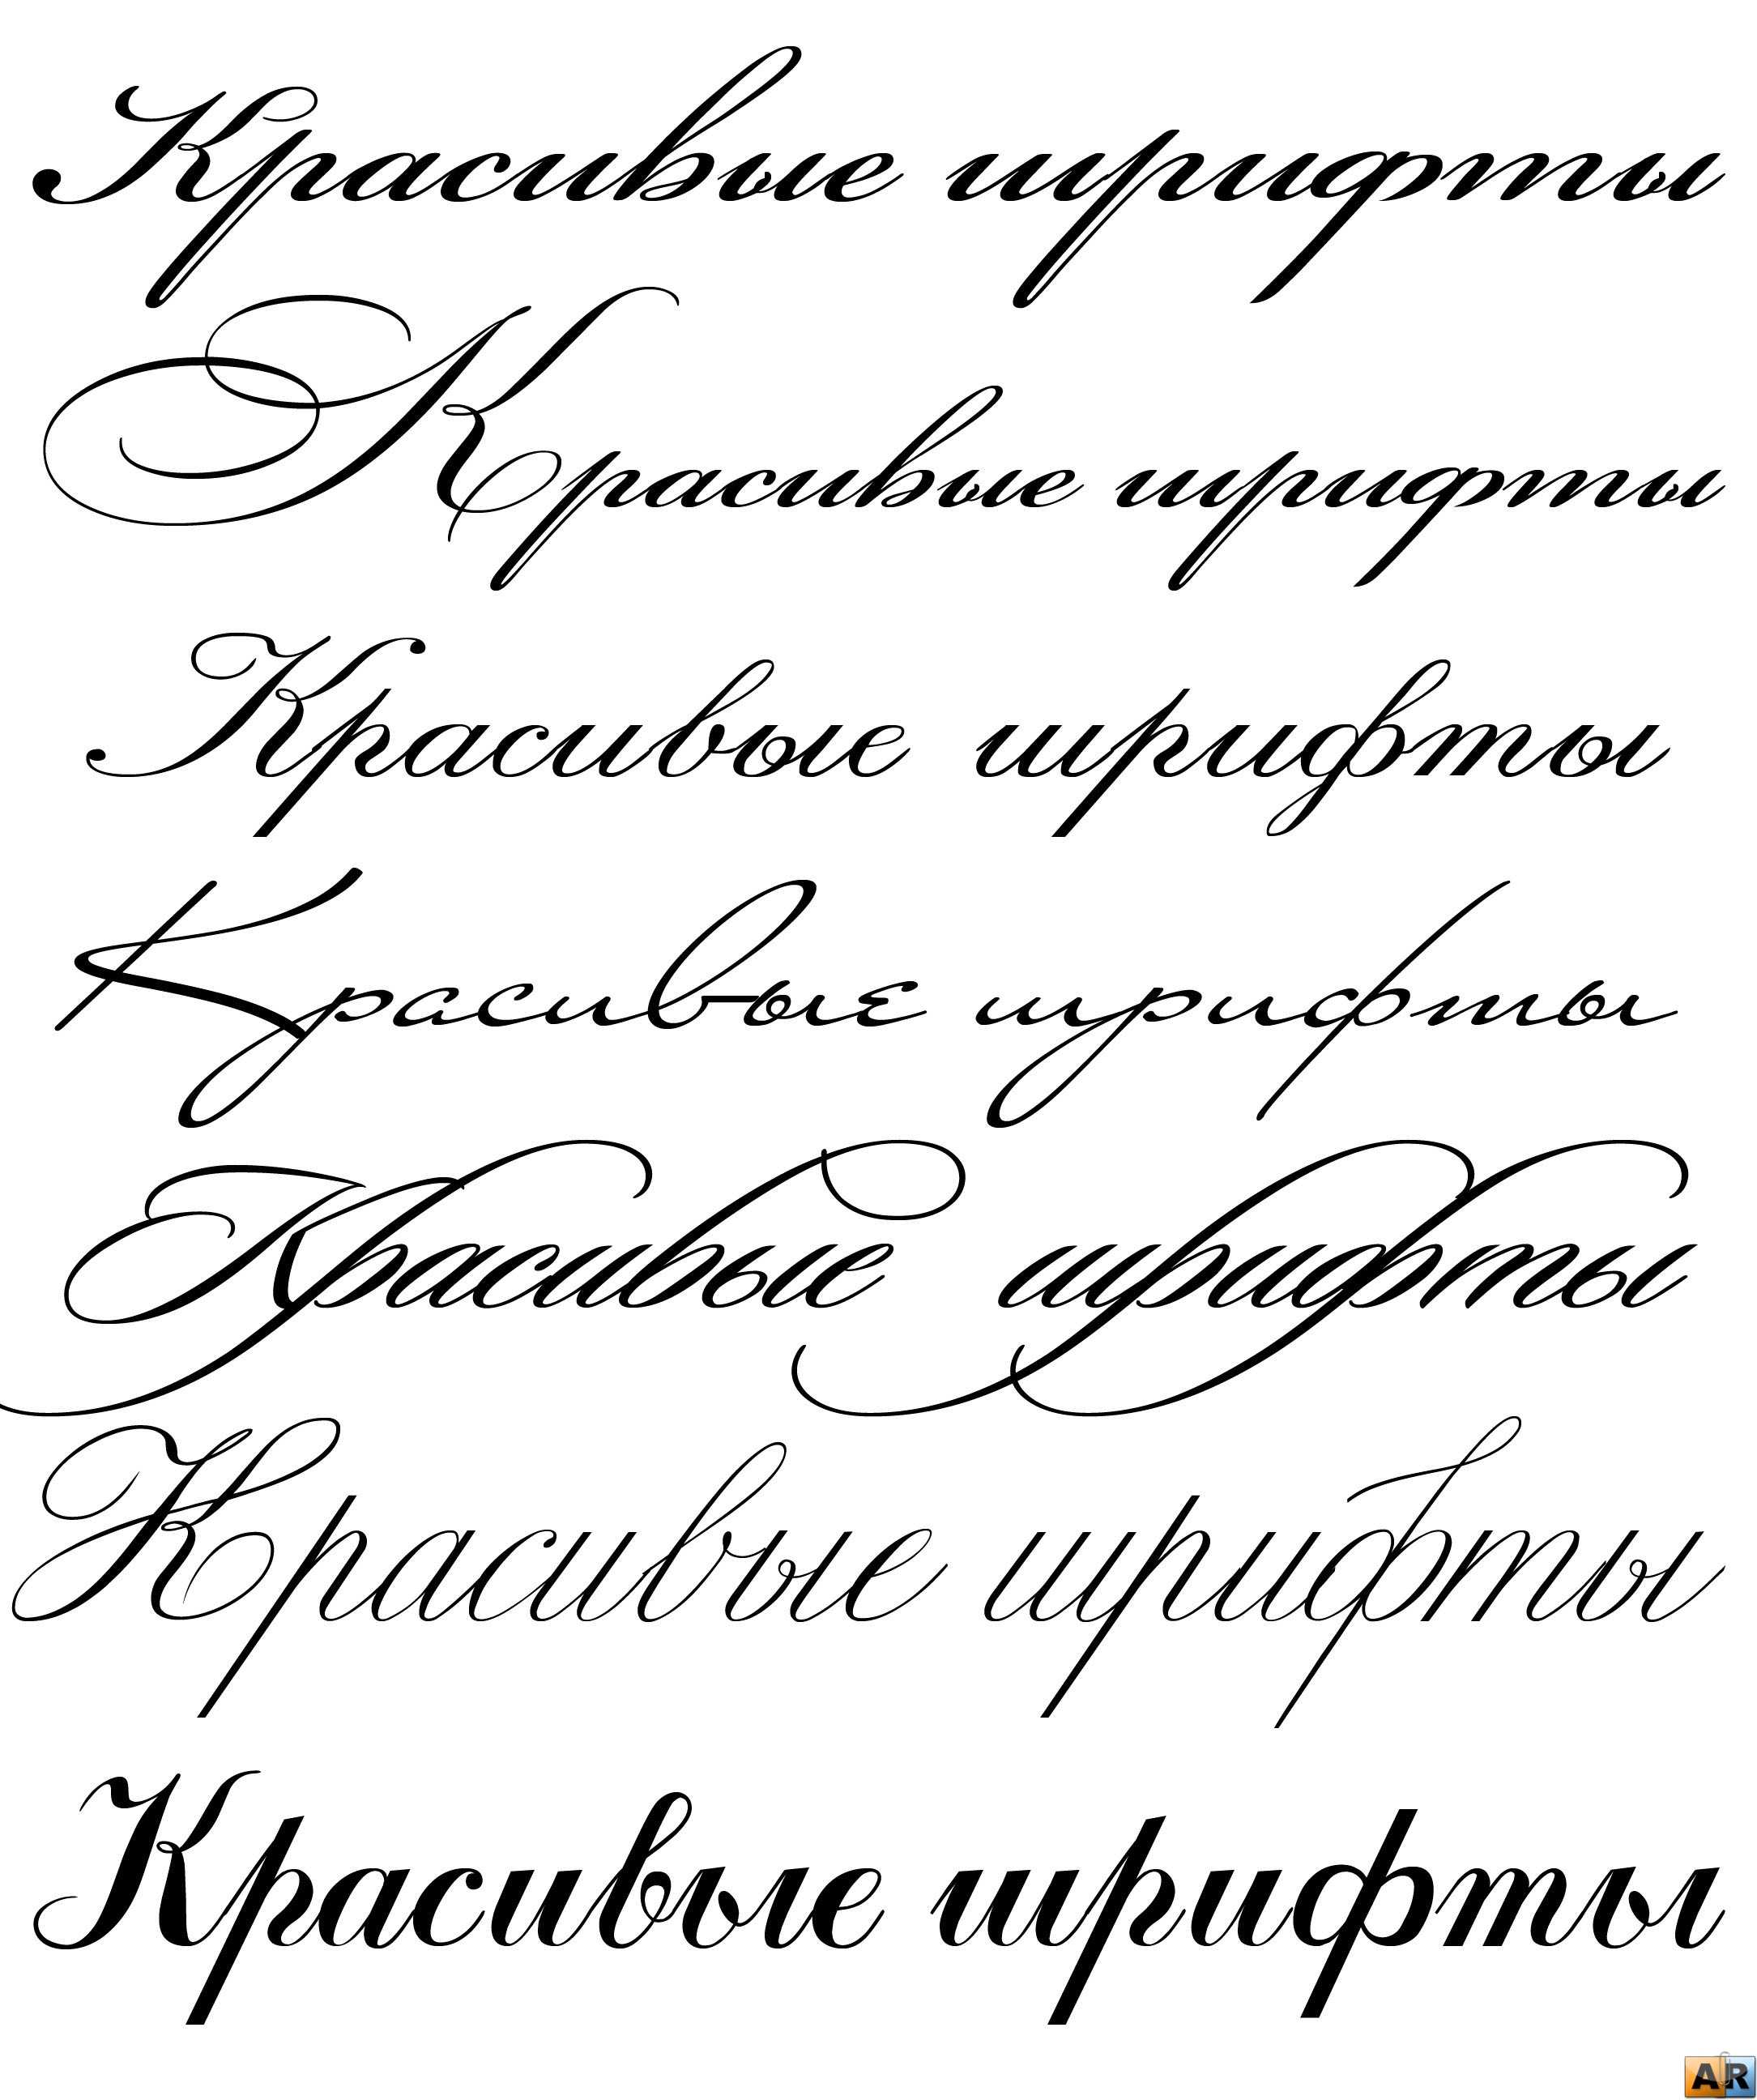 Шрифт телеграмма русский онлайн фото 90